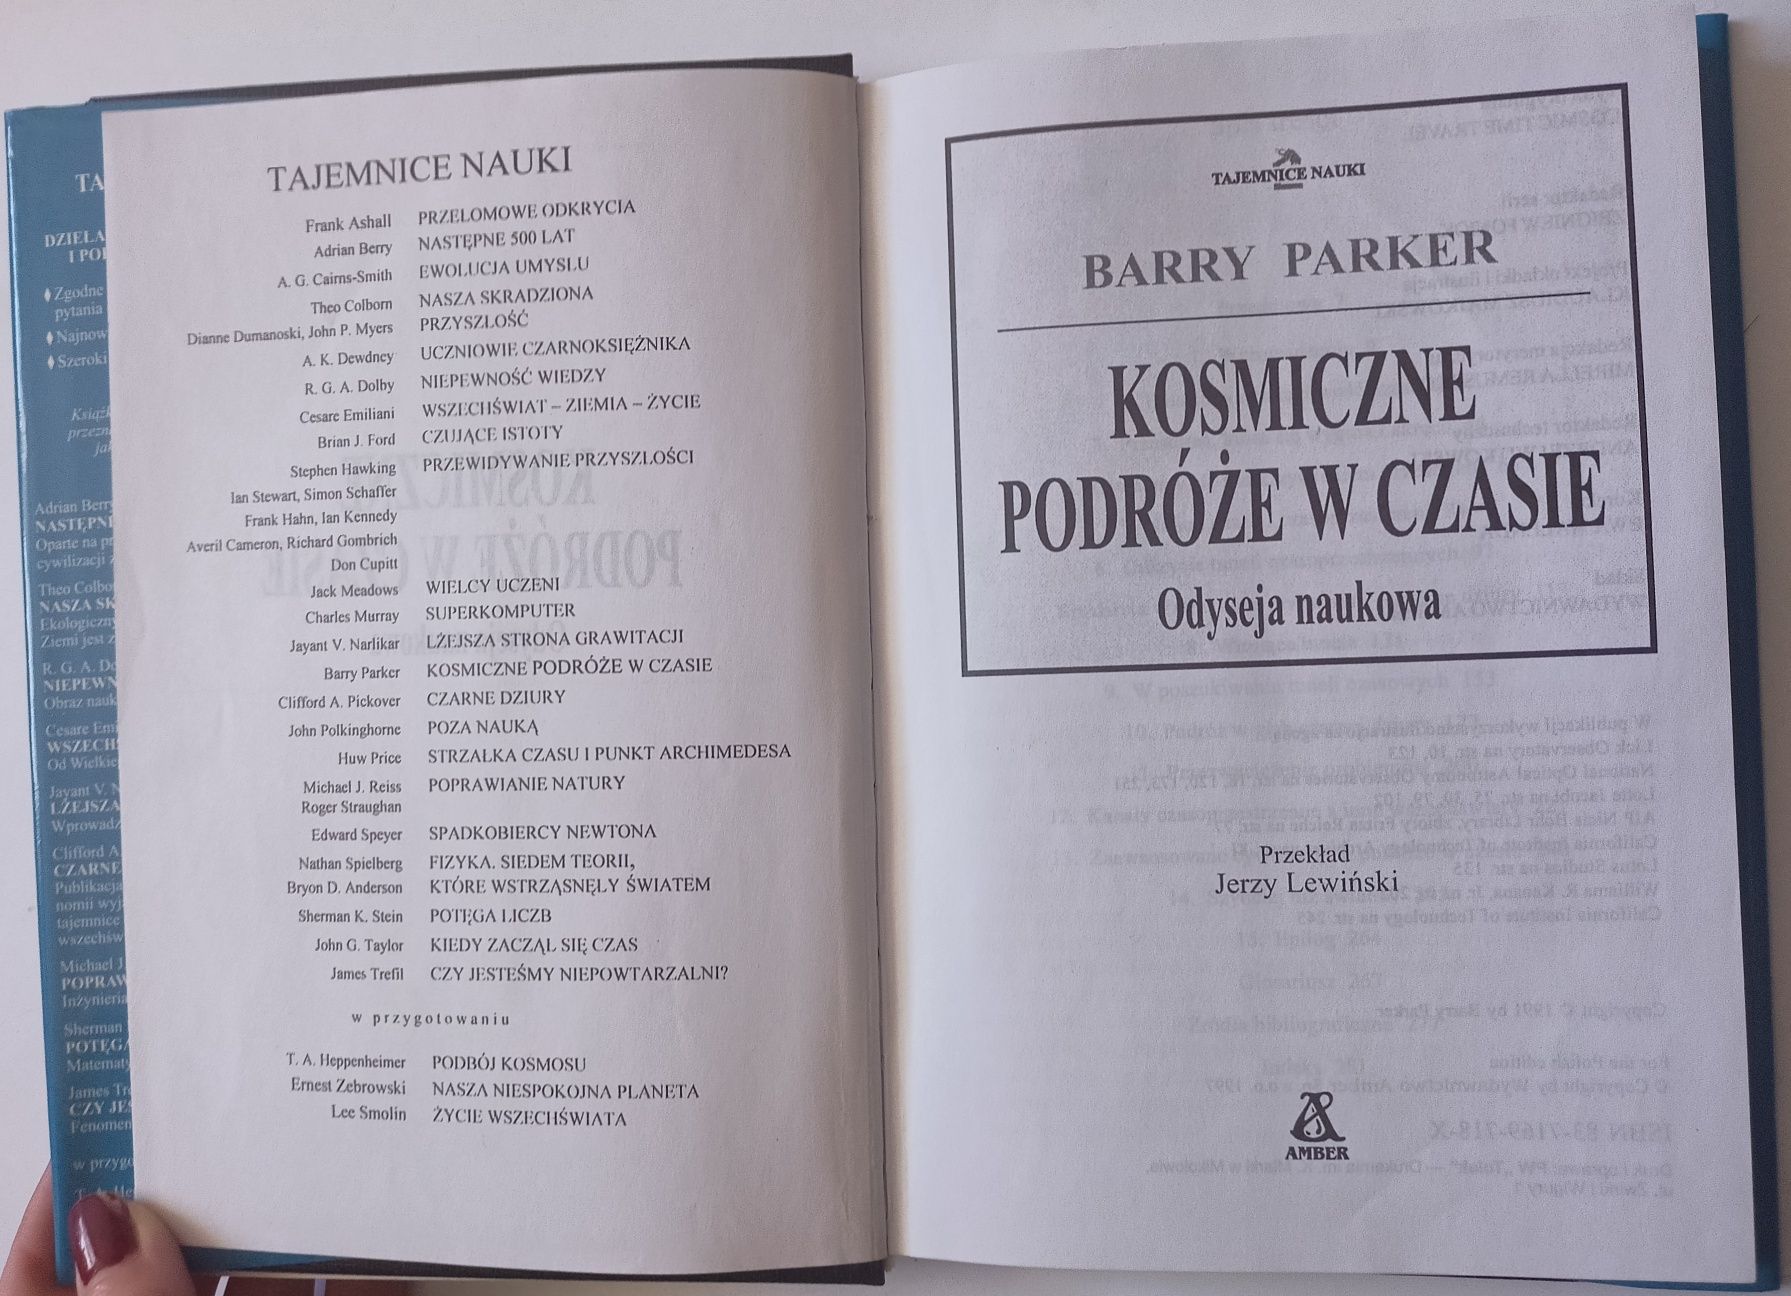 Barry Parker - Kosmiczne podróże w czasie - Odyseja naukowa